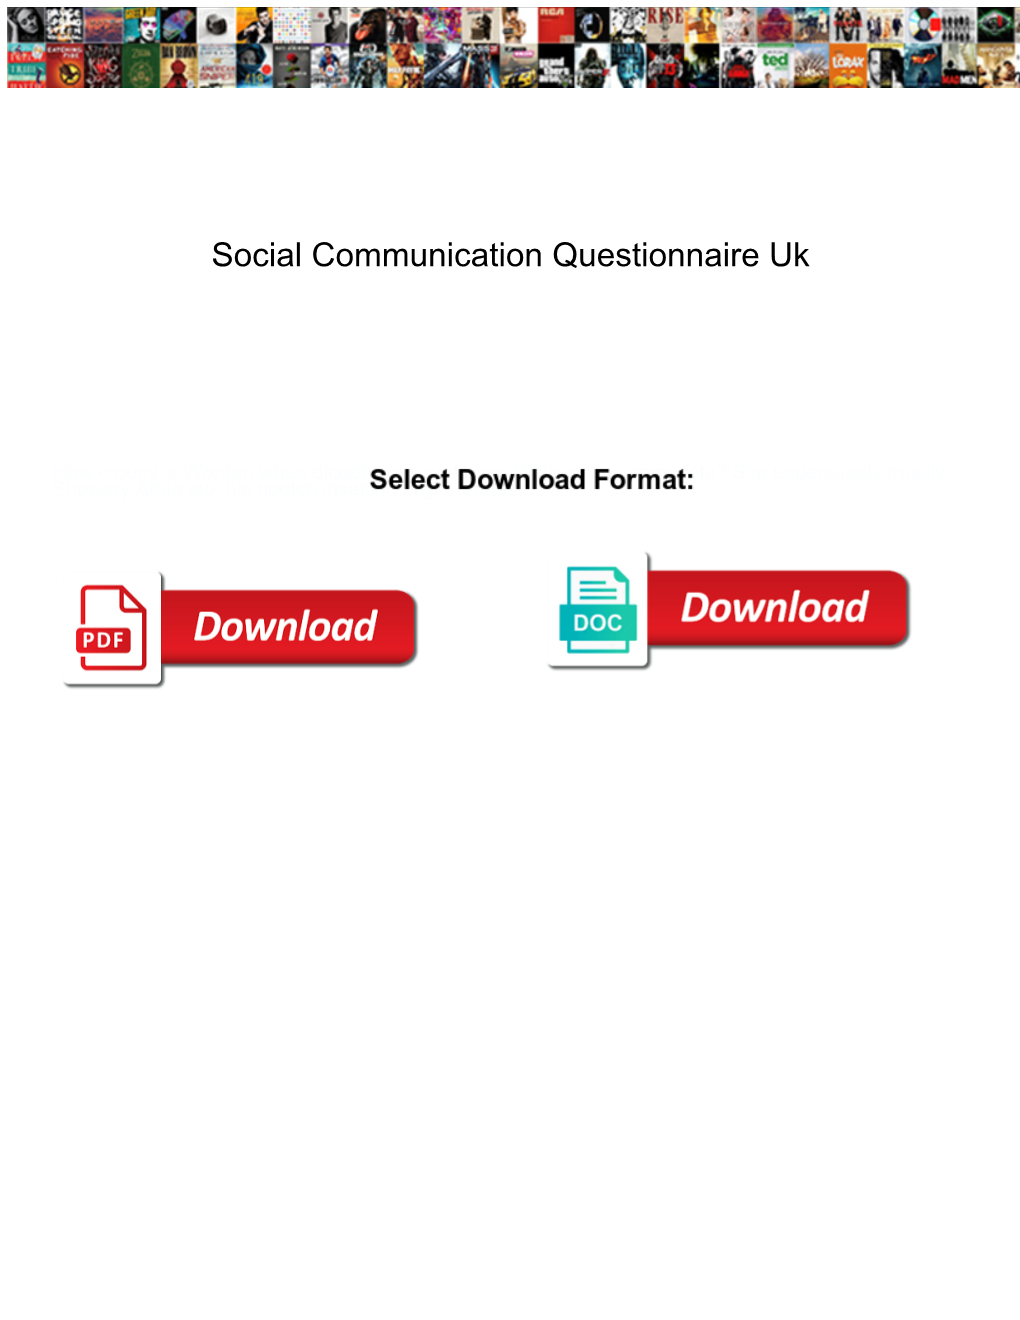 Social Communication Questionnaire Uk